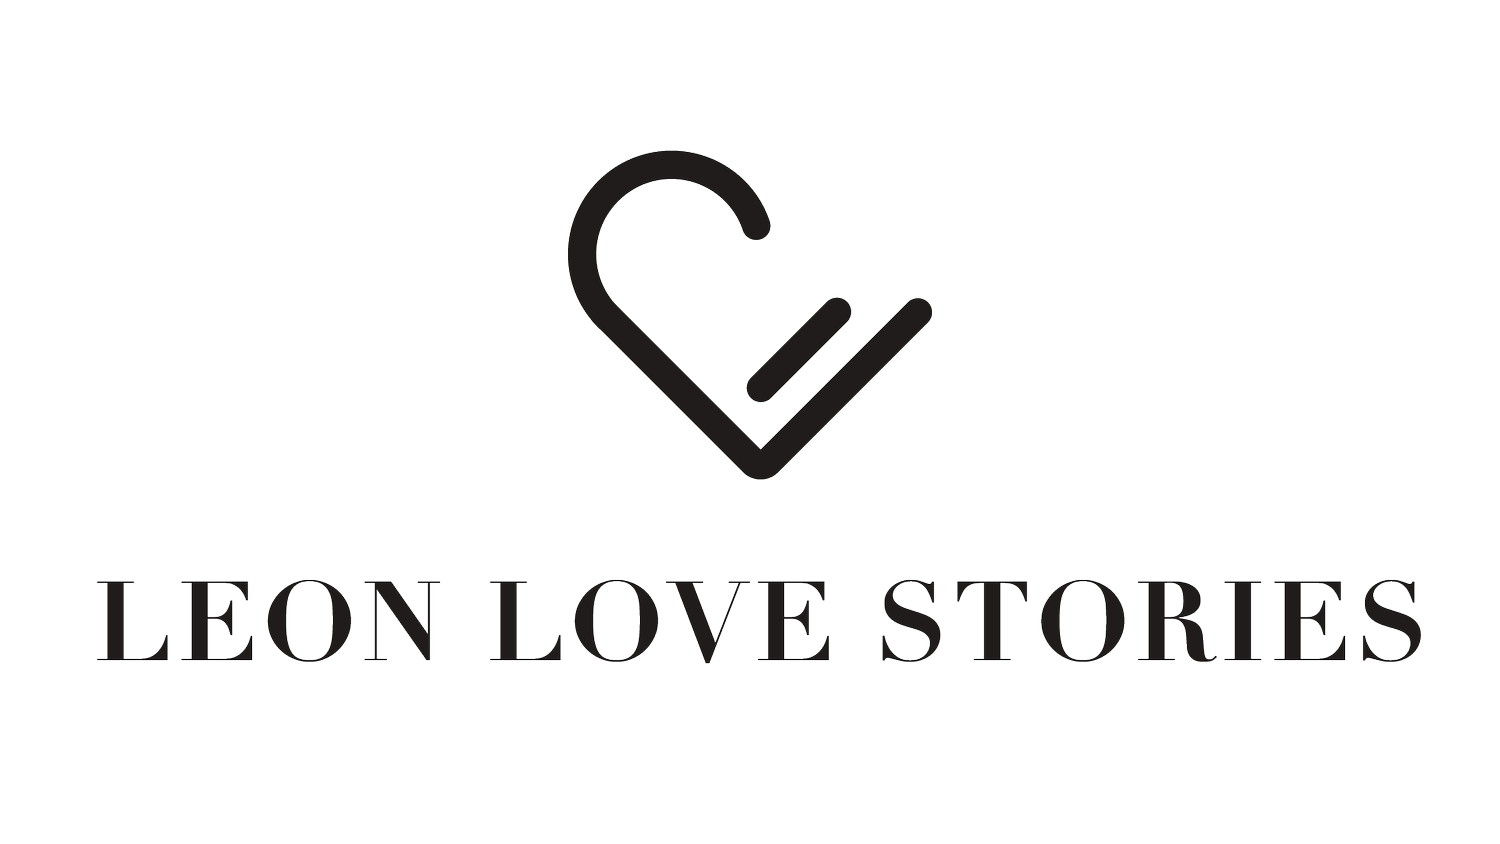 León Love Stories